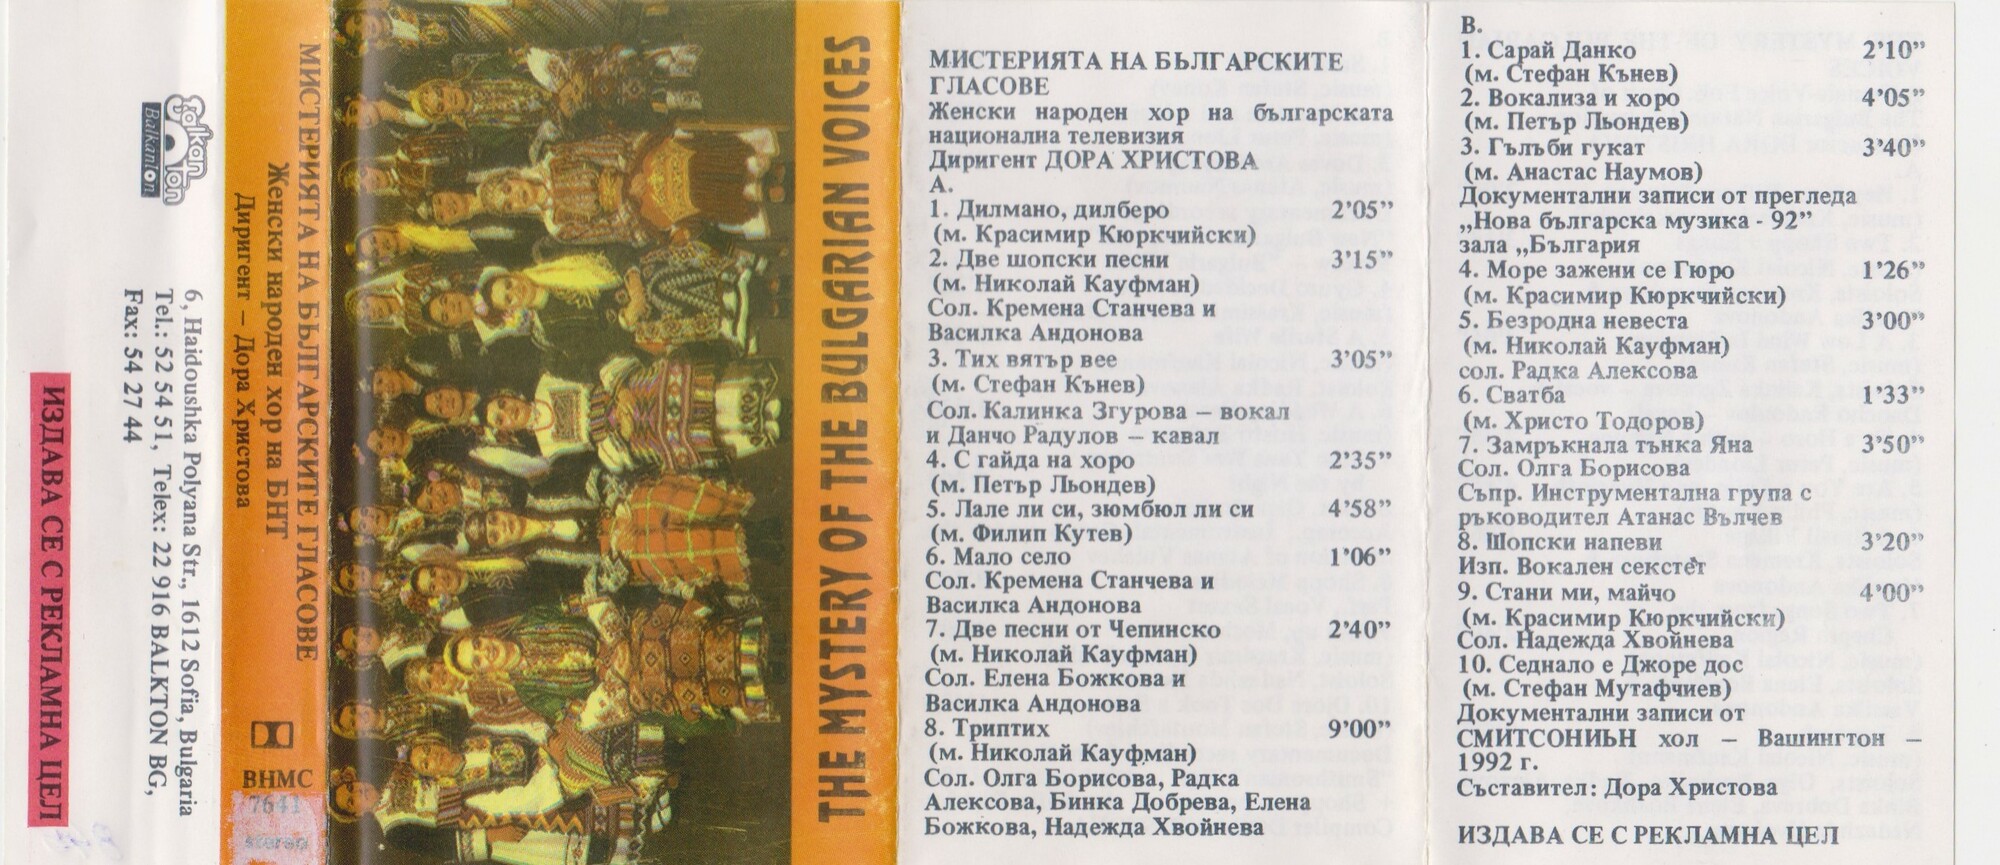 Мистерията на българските гласове. Женски народен хор на БНТ, диригент Дора ХРИСТОВА (ПОРЪЧКА)